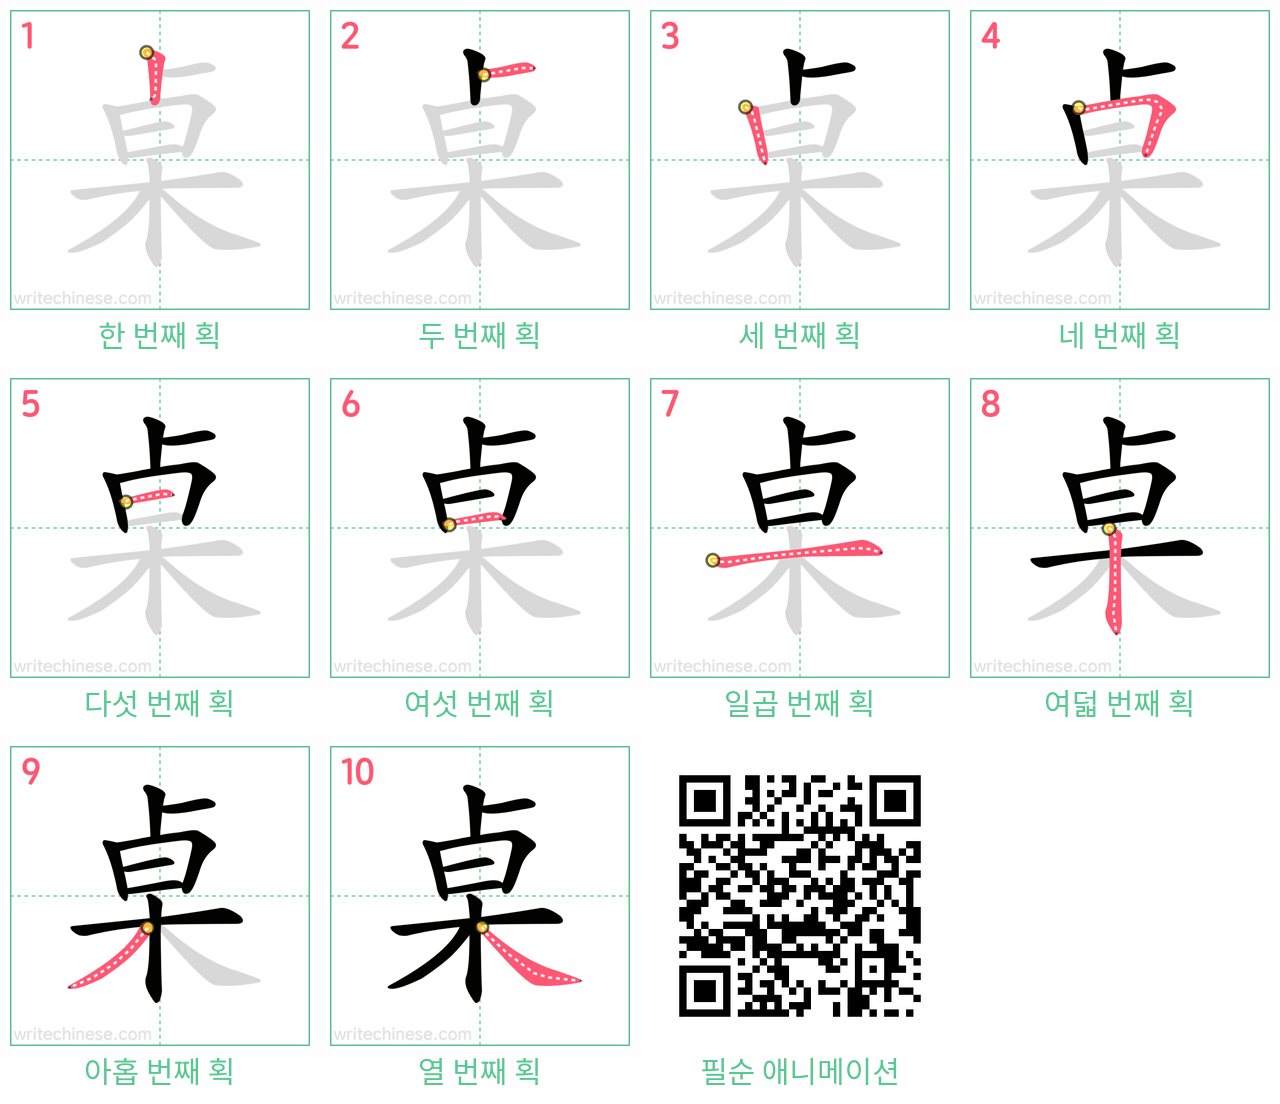 桌 step-by-step stroke order diagrams